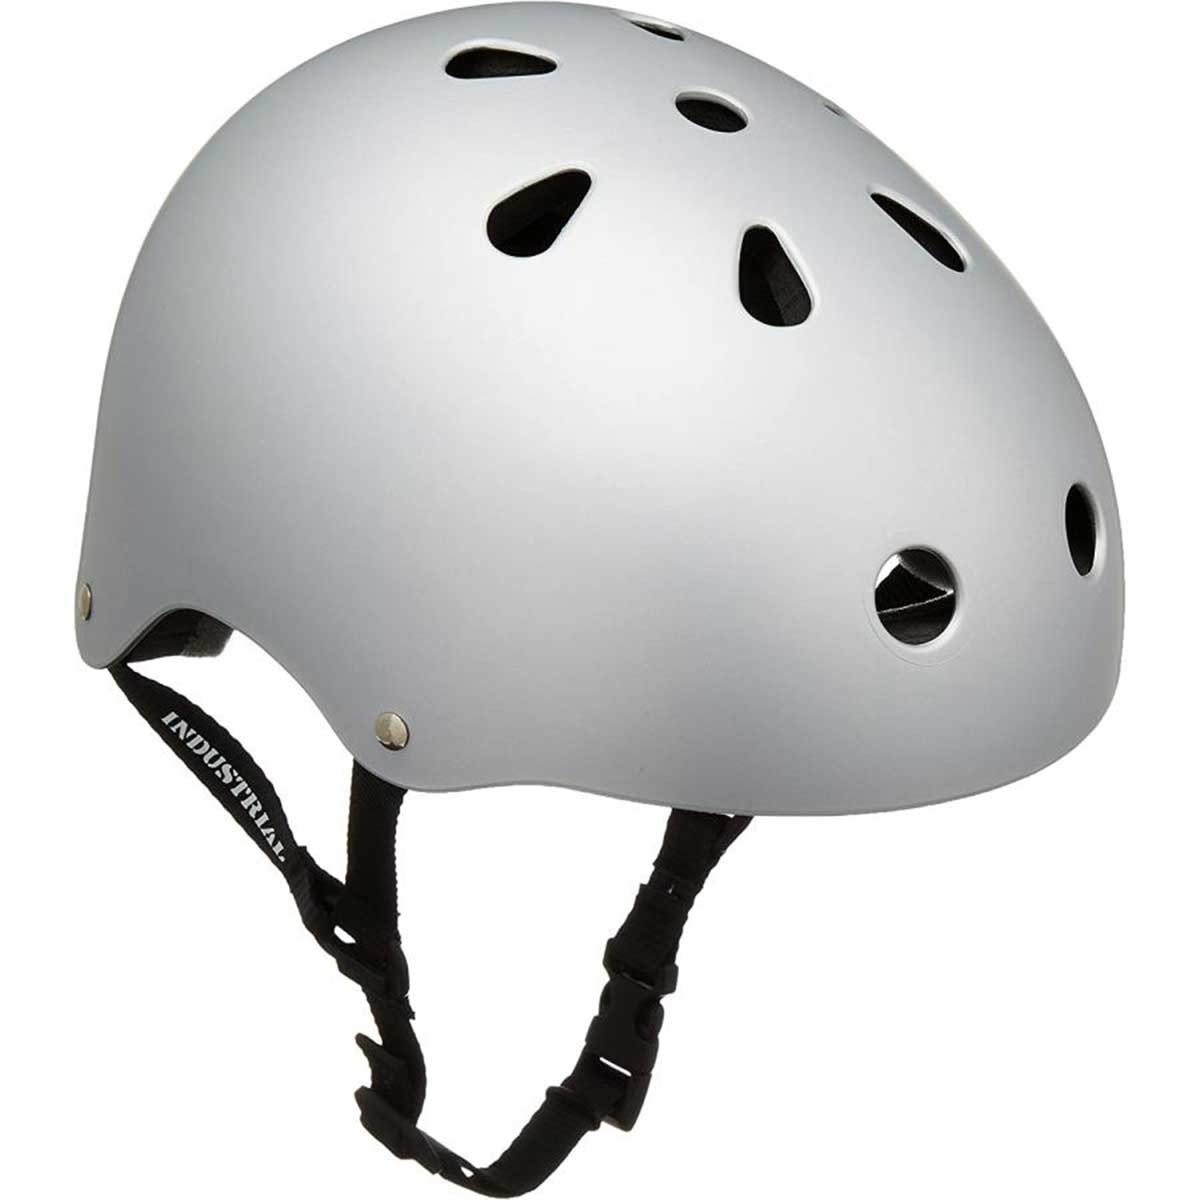 インダストリアル スケート ボード ヘルメット 1002837-SILVER HELMET INDUSTRIAL